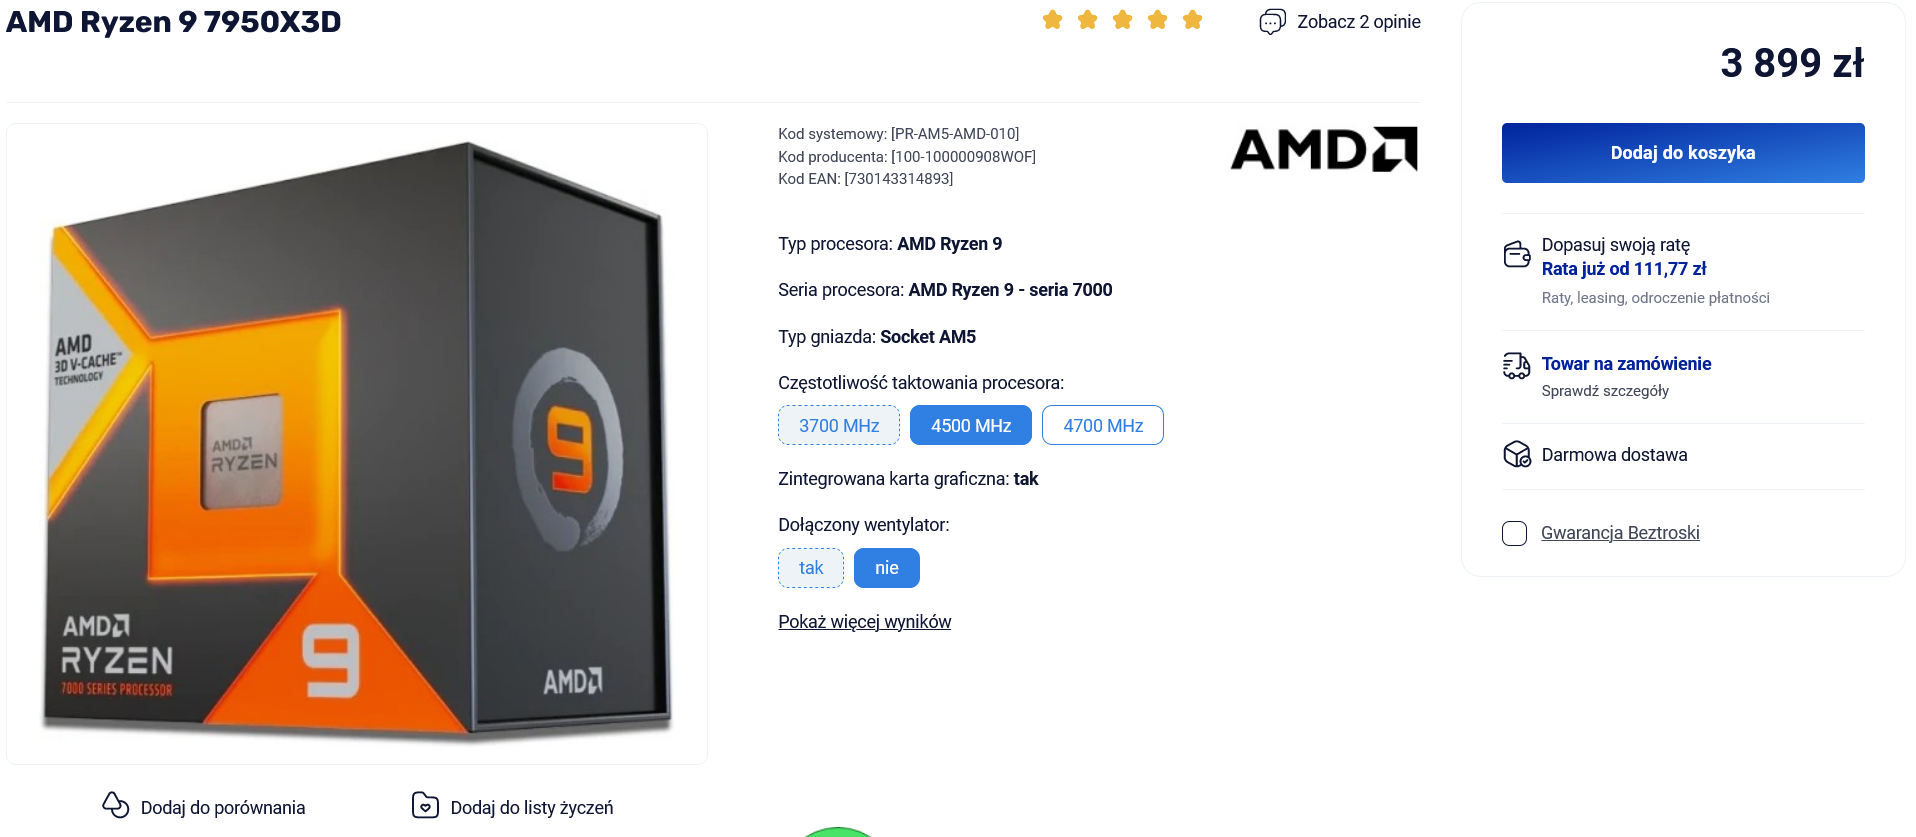 Gdzie kupić AMD Ryzen 7000X3D? Sprawdzamy polskie ceny procesorów